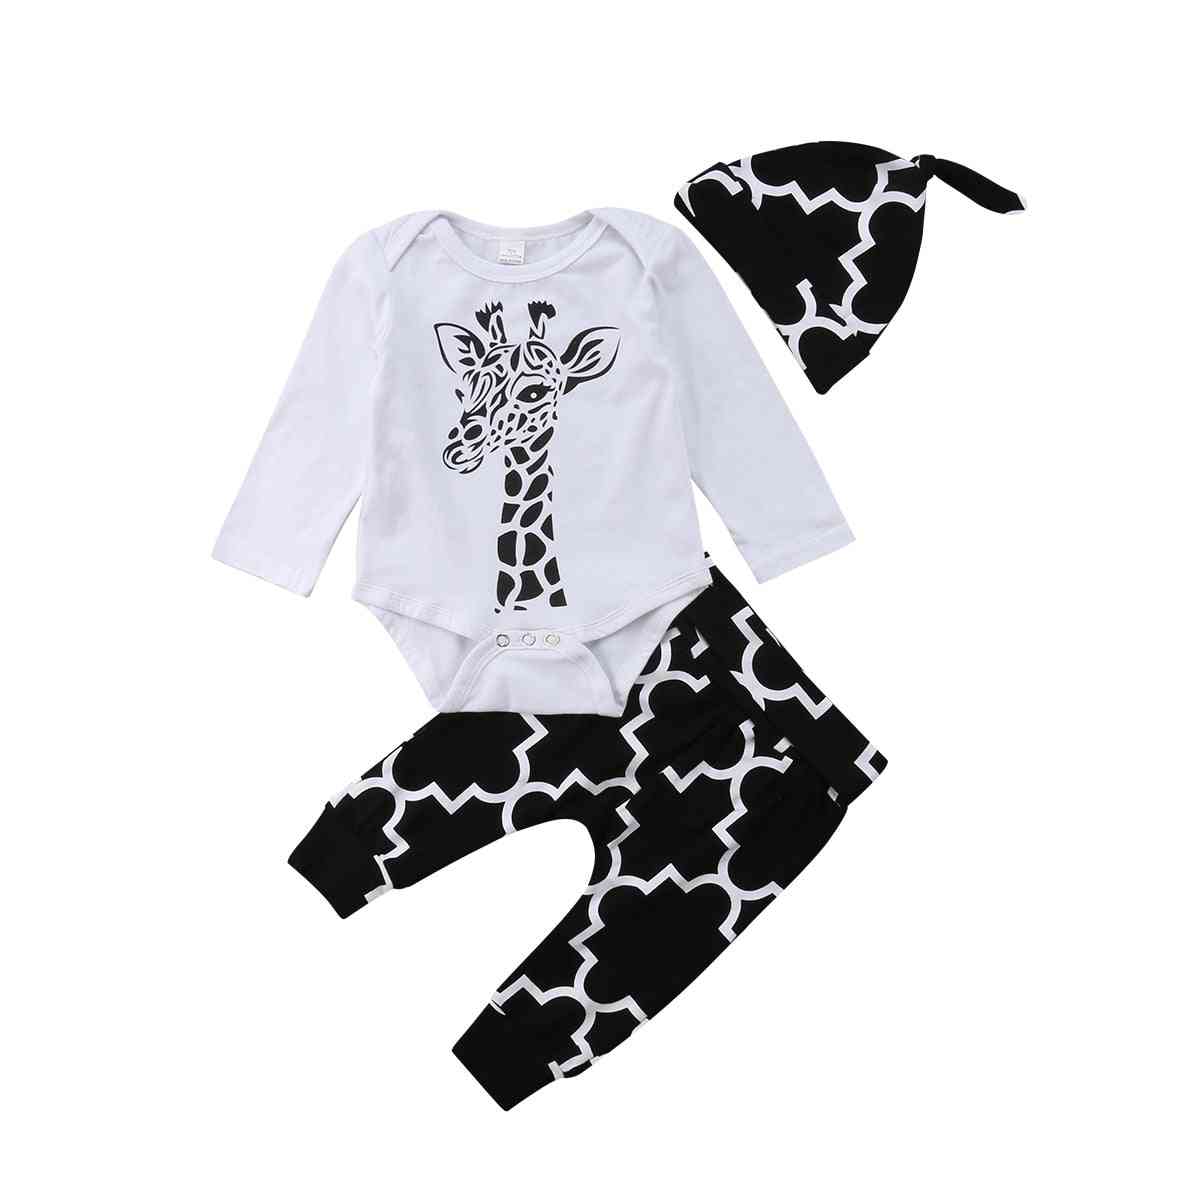 Pojkekläder för baby - bomull, hjort långärmad, romper + byxor + hattkläder - vit1 / 3m